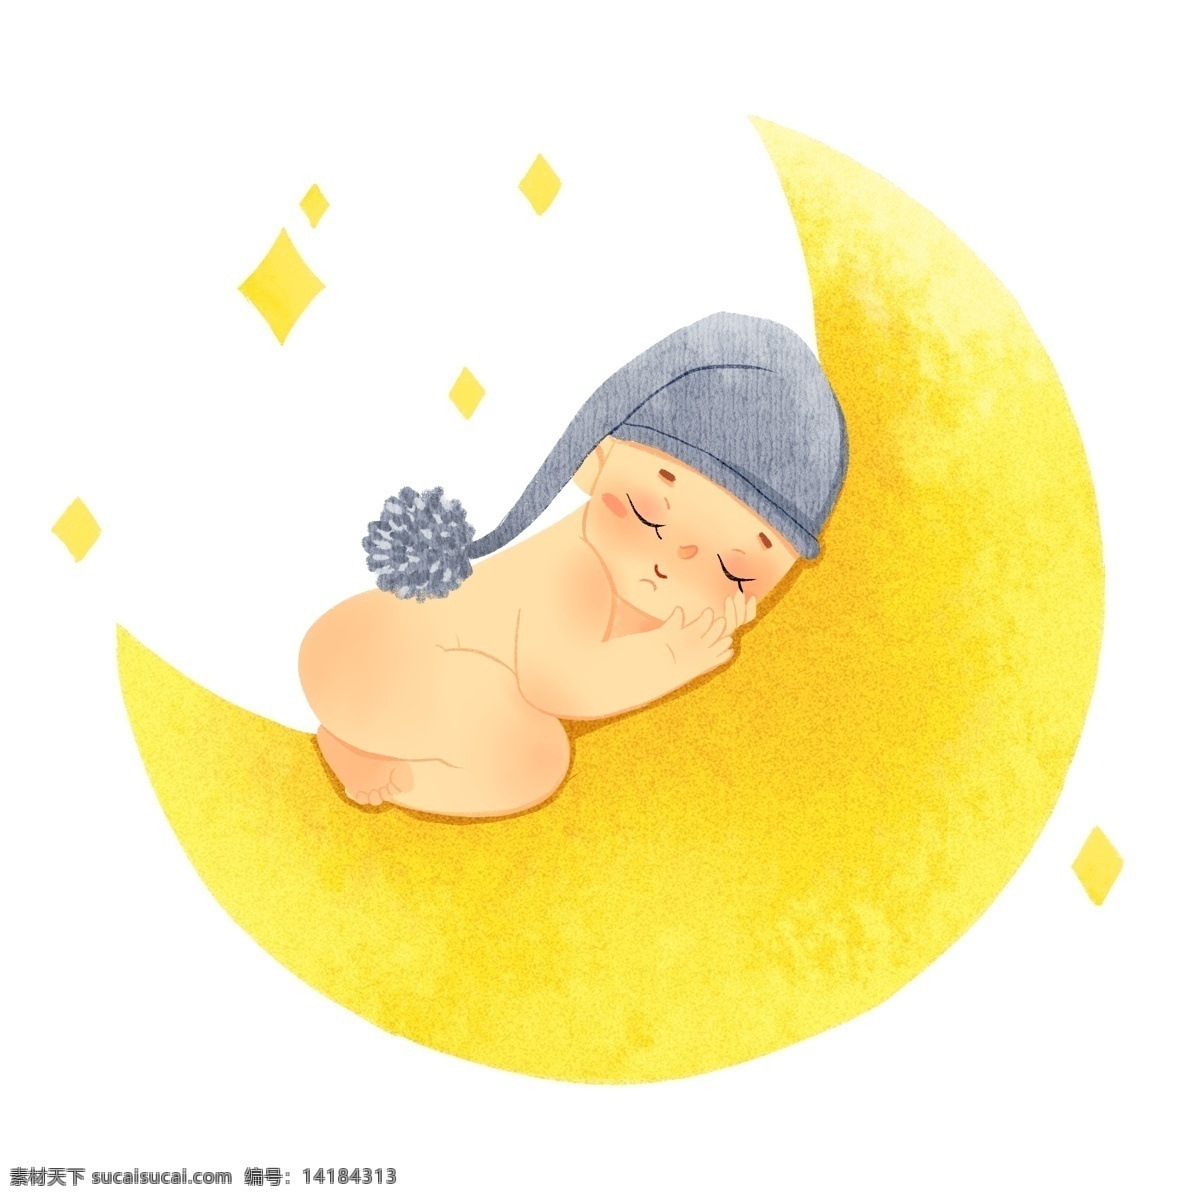 月亮 上 睡觉 婴儿 星星 黄色 小婴儿 小朋友 baby 闭眼睛 帽子 毛线帽 可爱 卡通 享受 舒服 舒适 人物